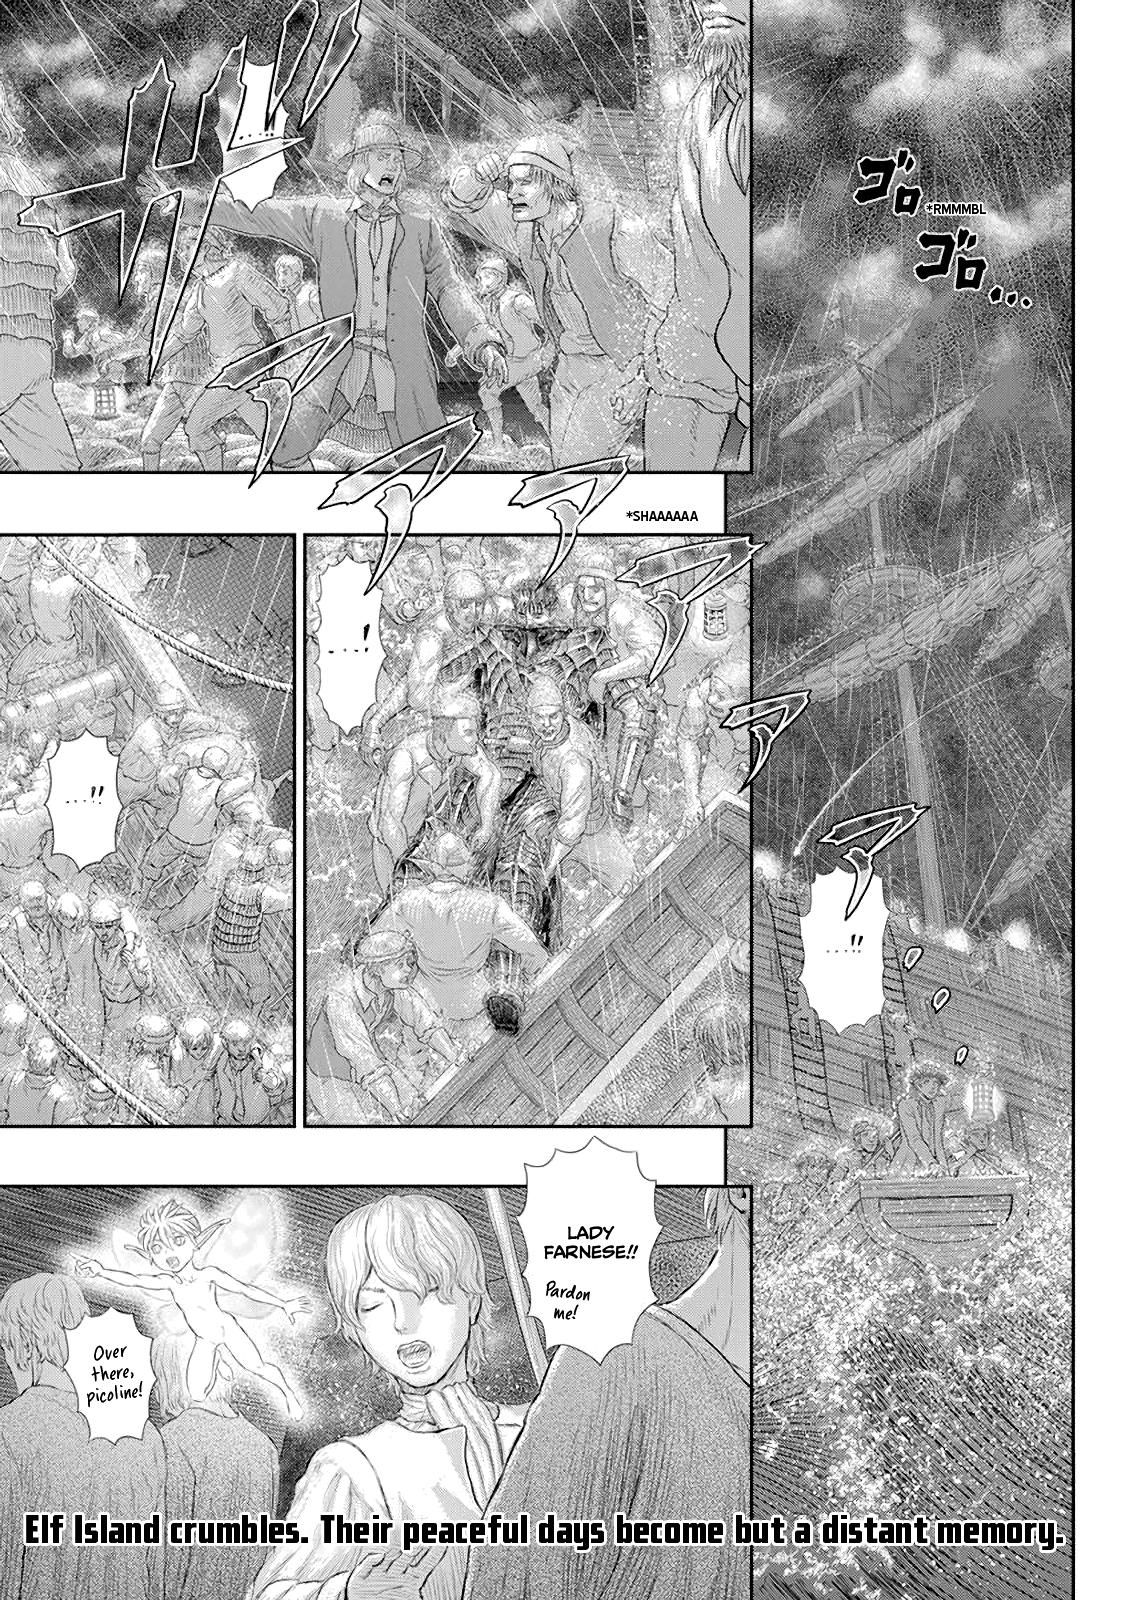 Berserk Manga Chapter 370 image 02